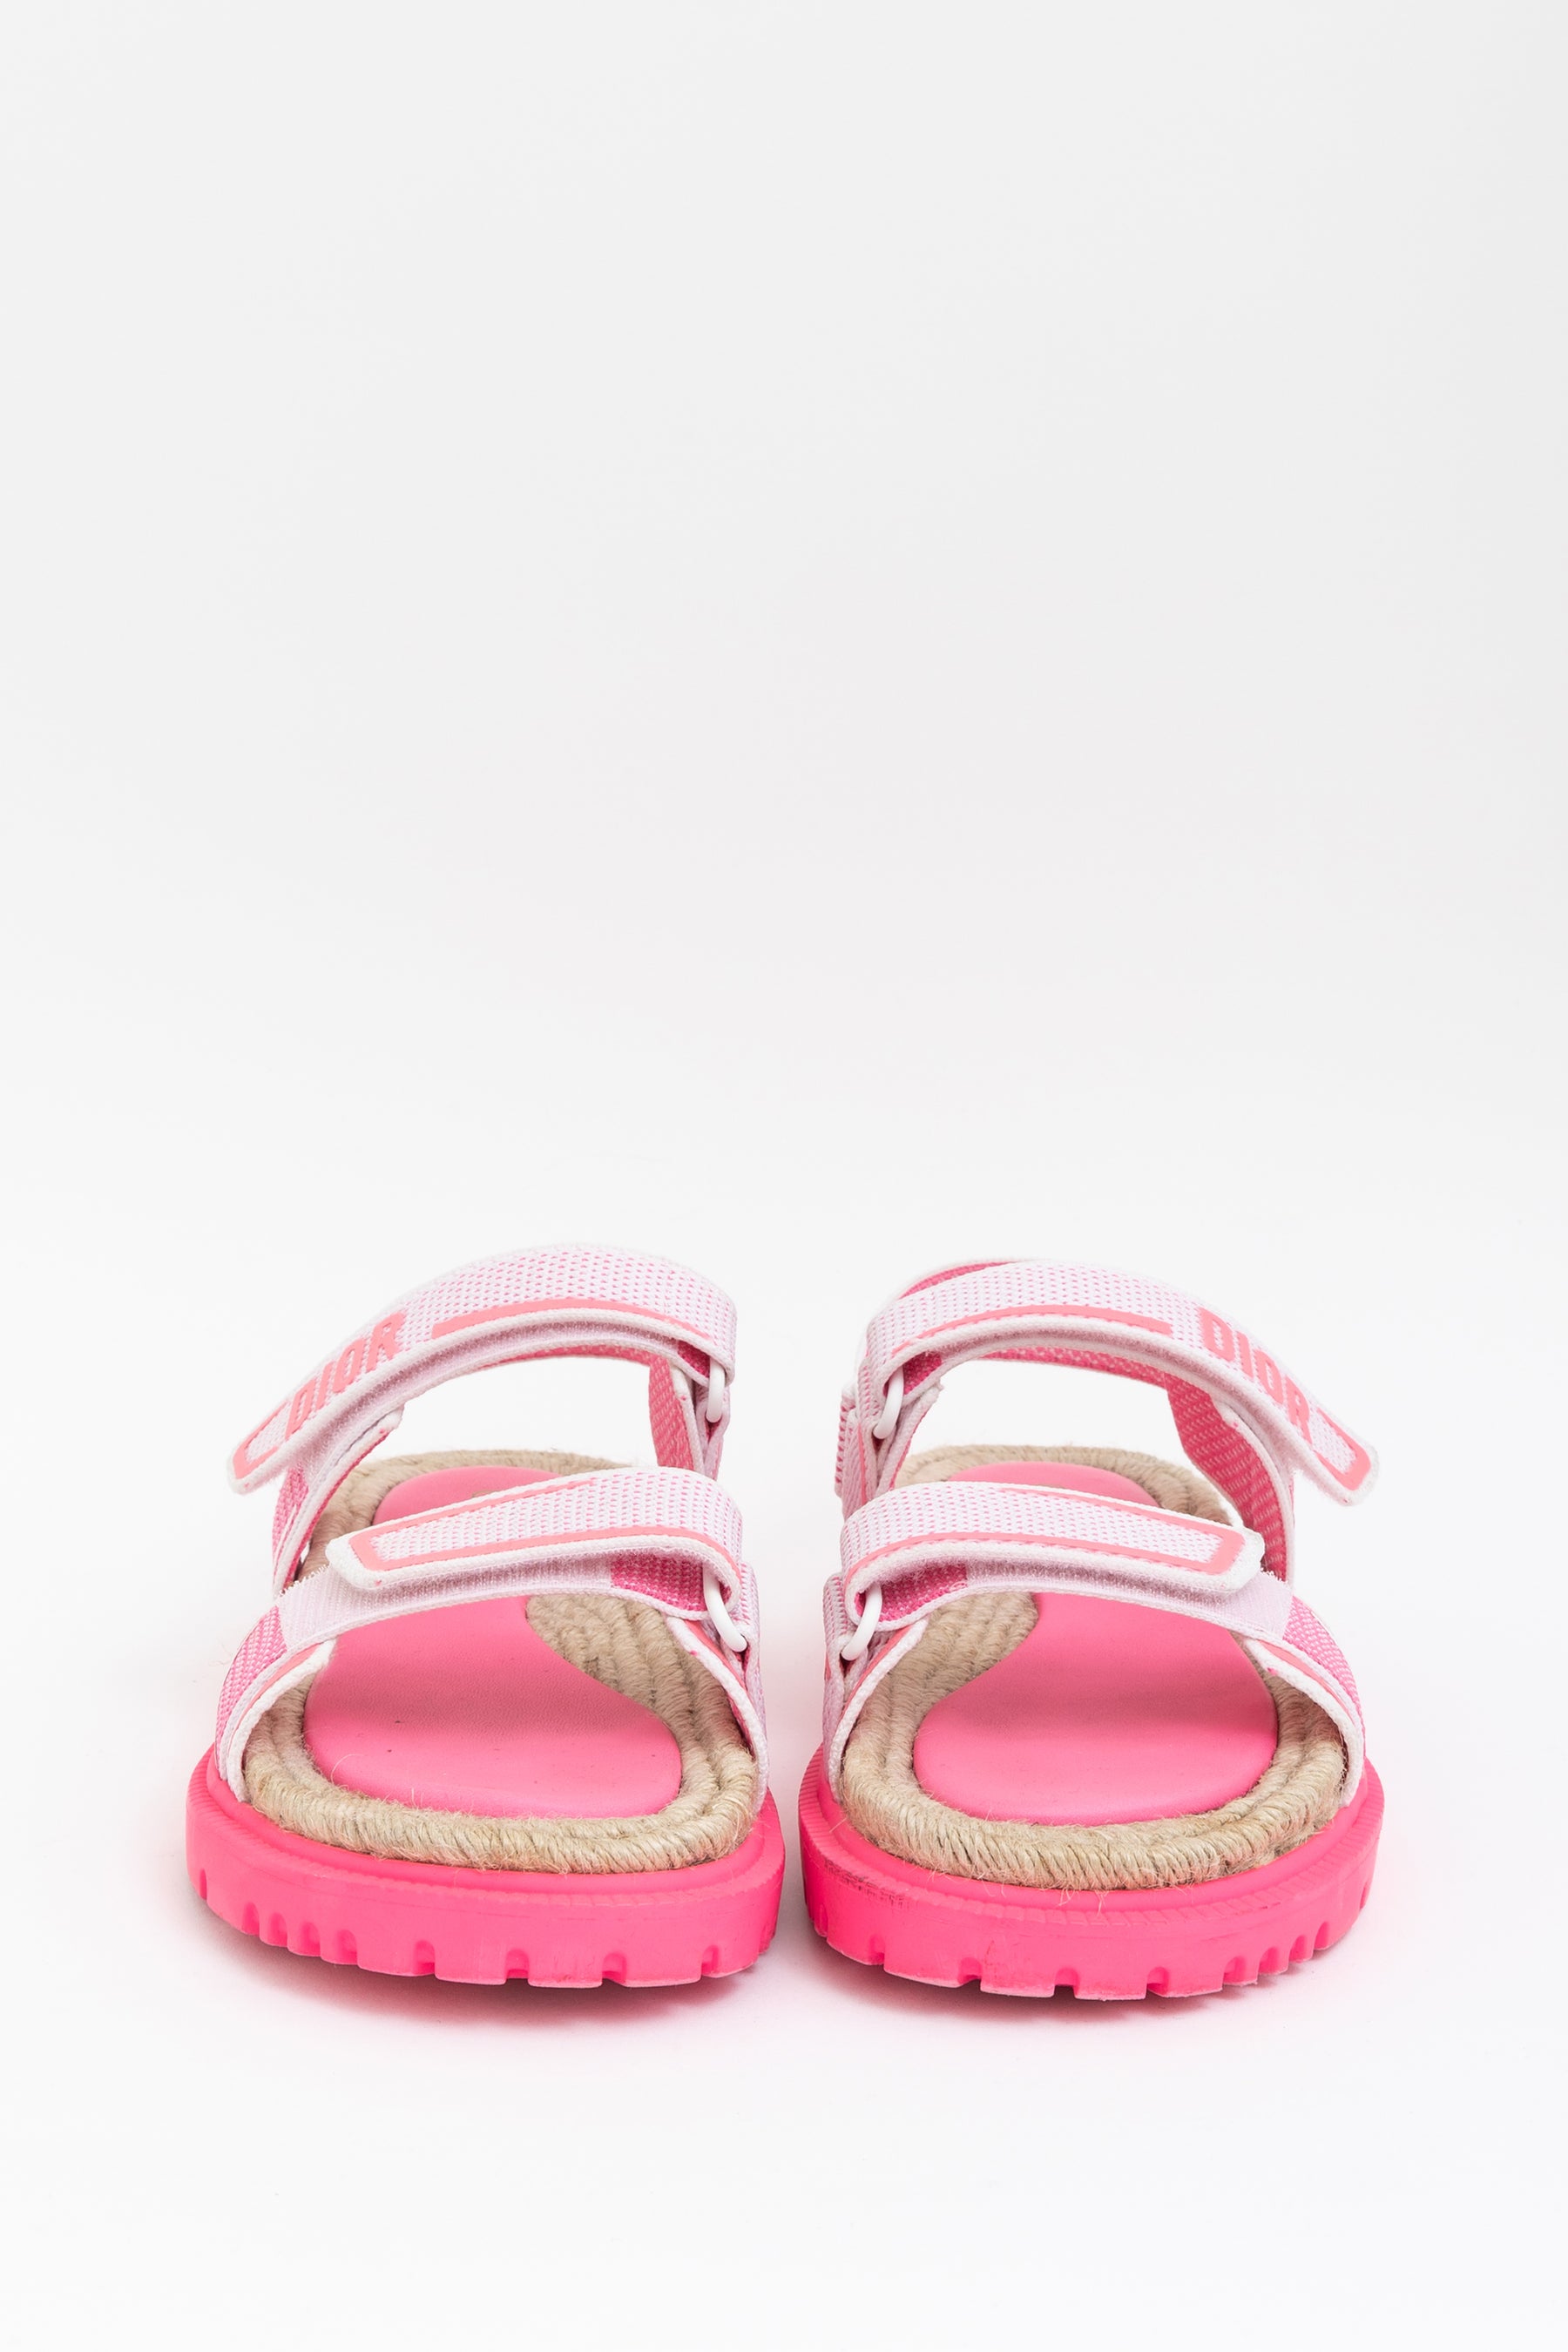 dior-dioract-neon-pink-sandals-39-c344